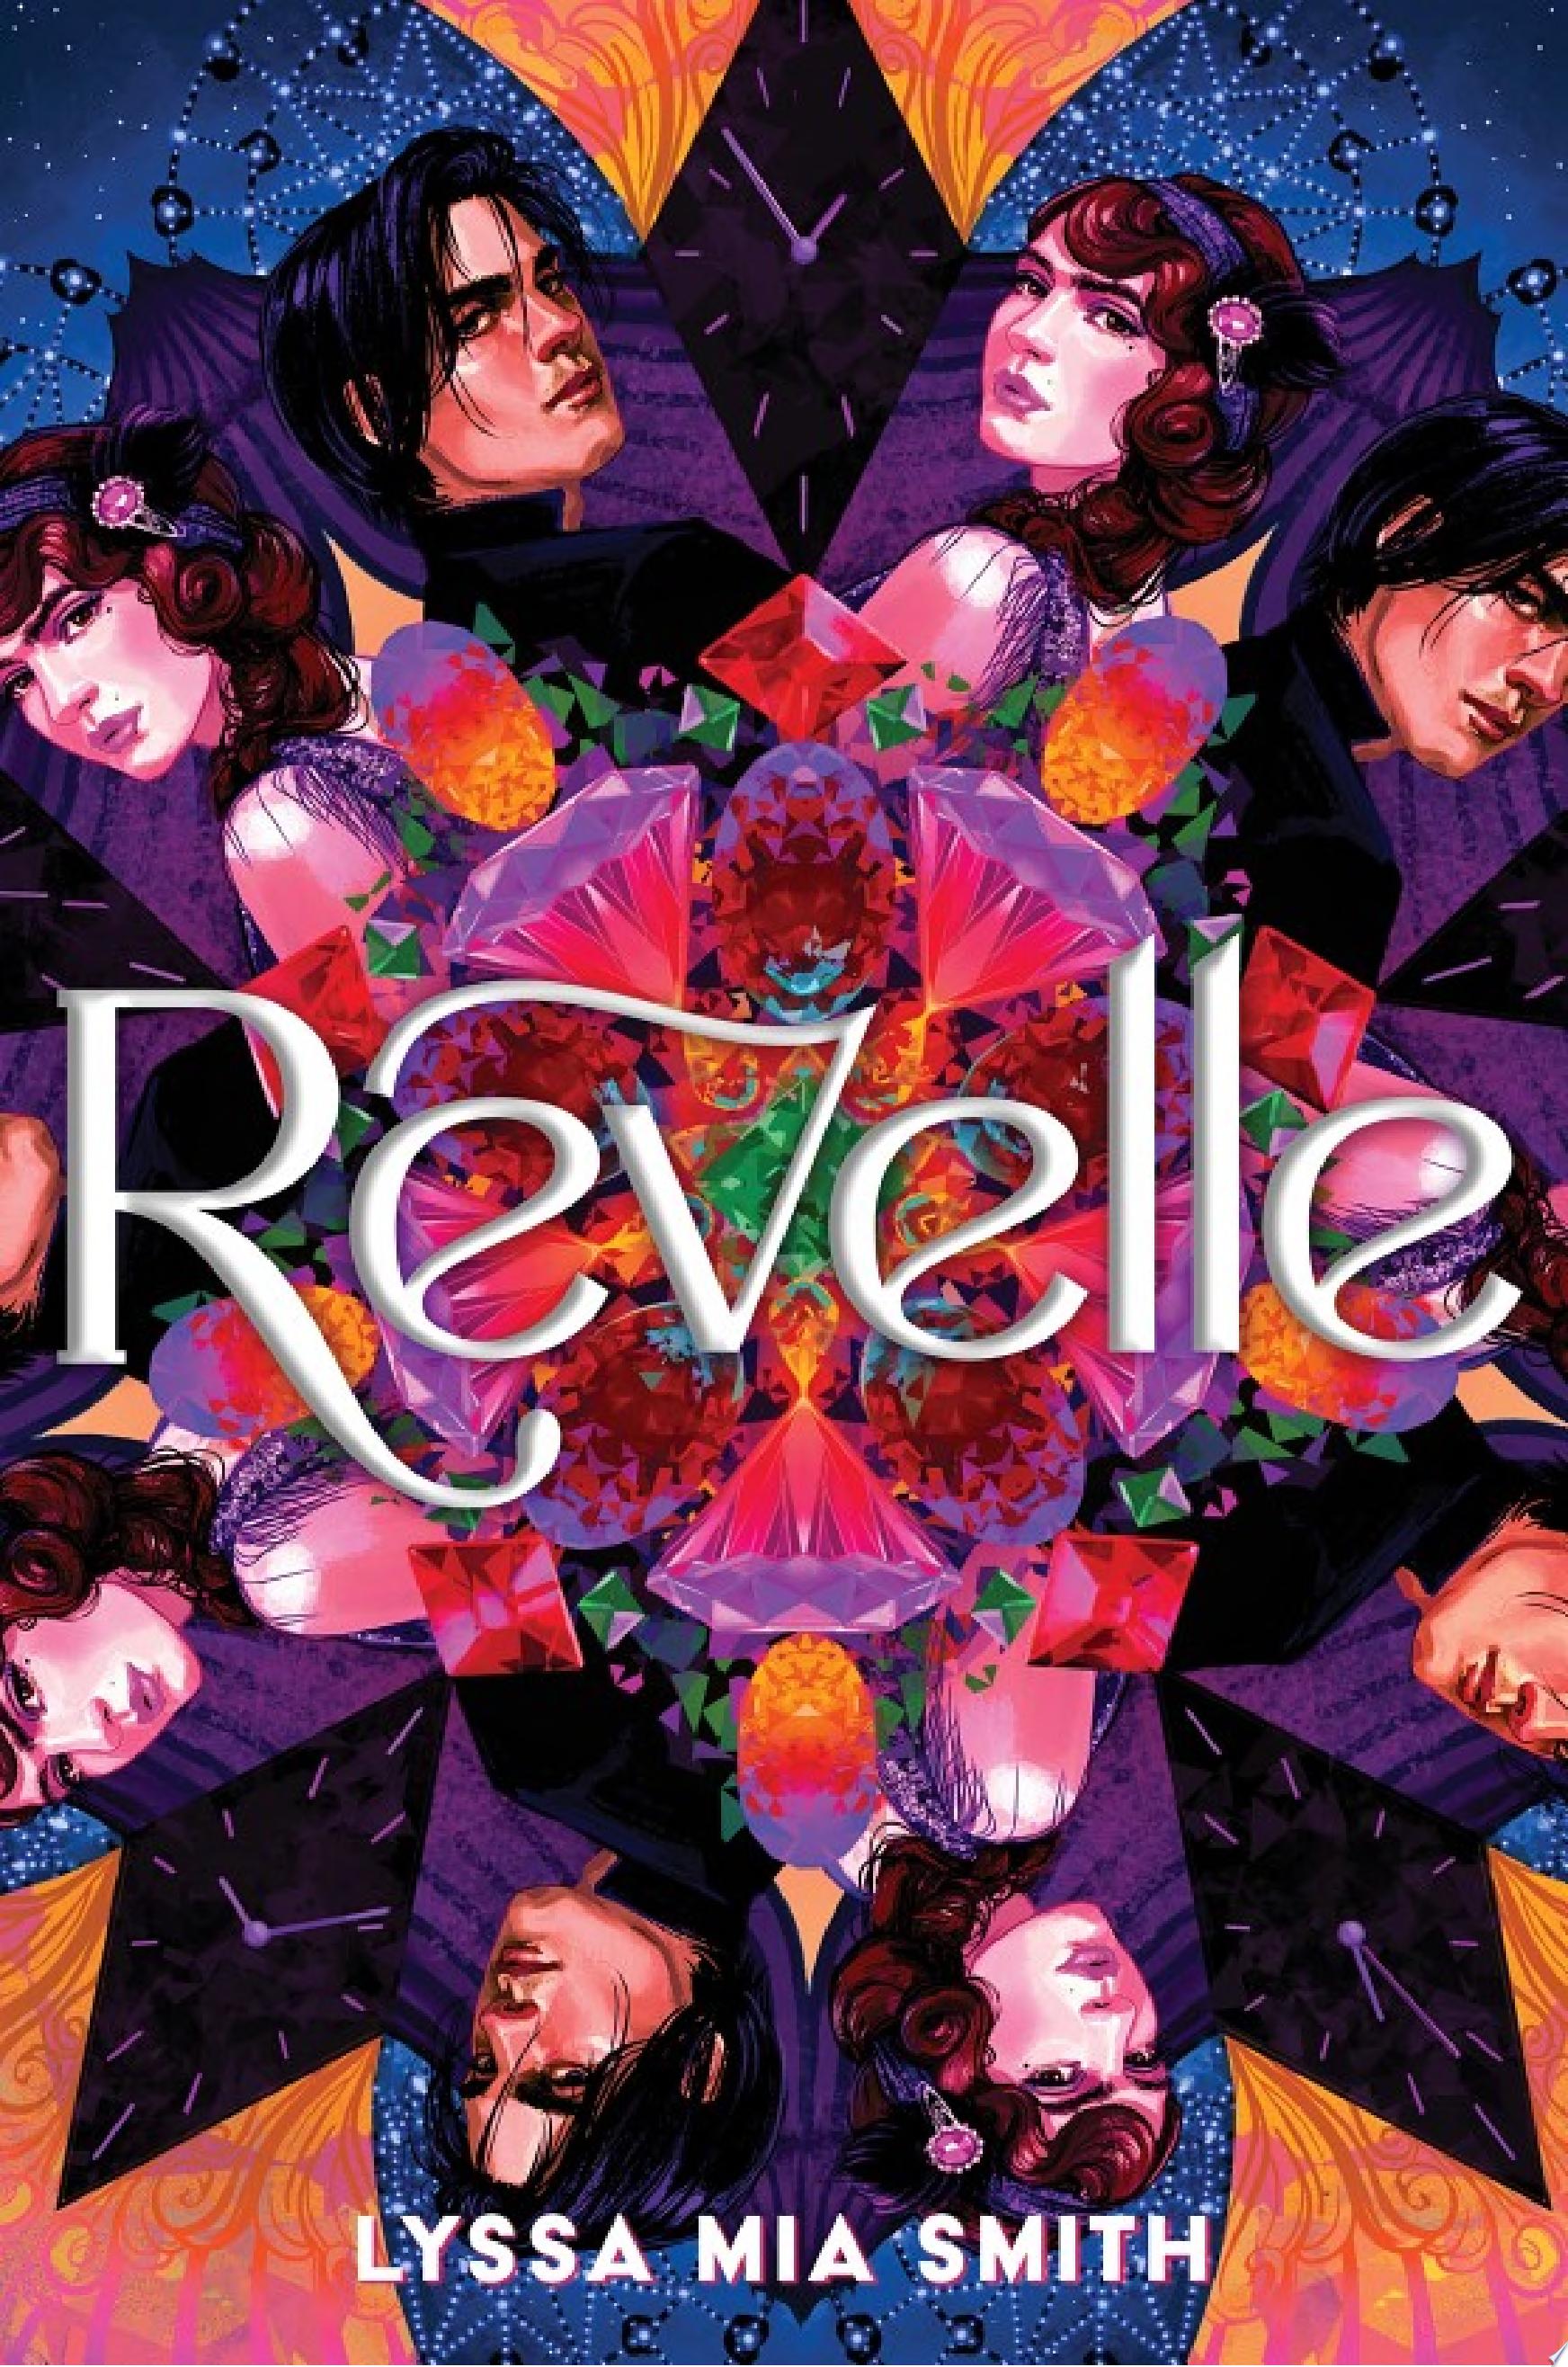 Image for "Revelle"